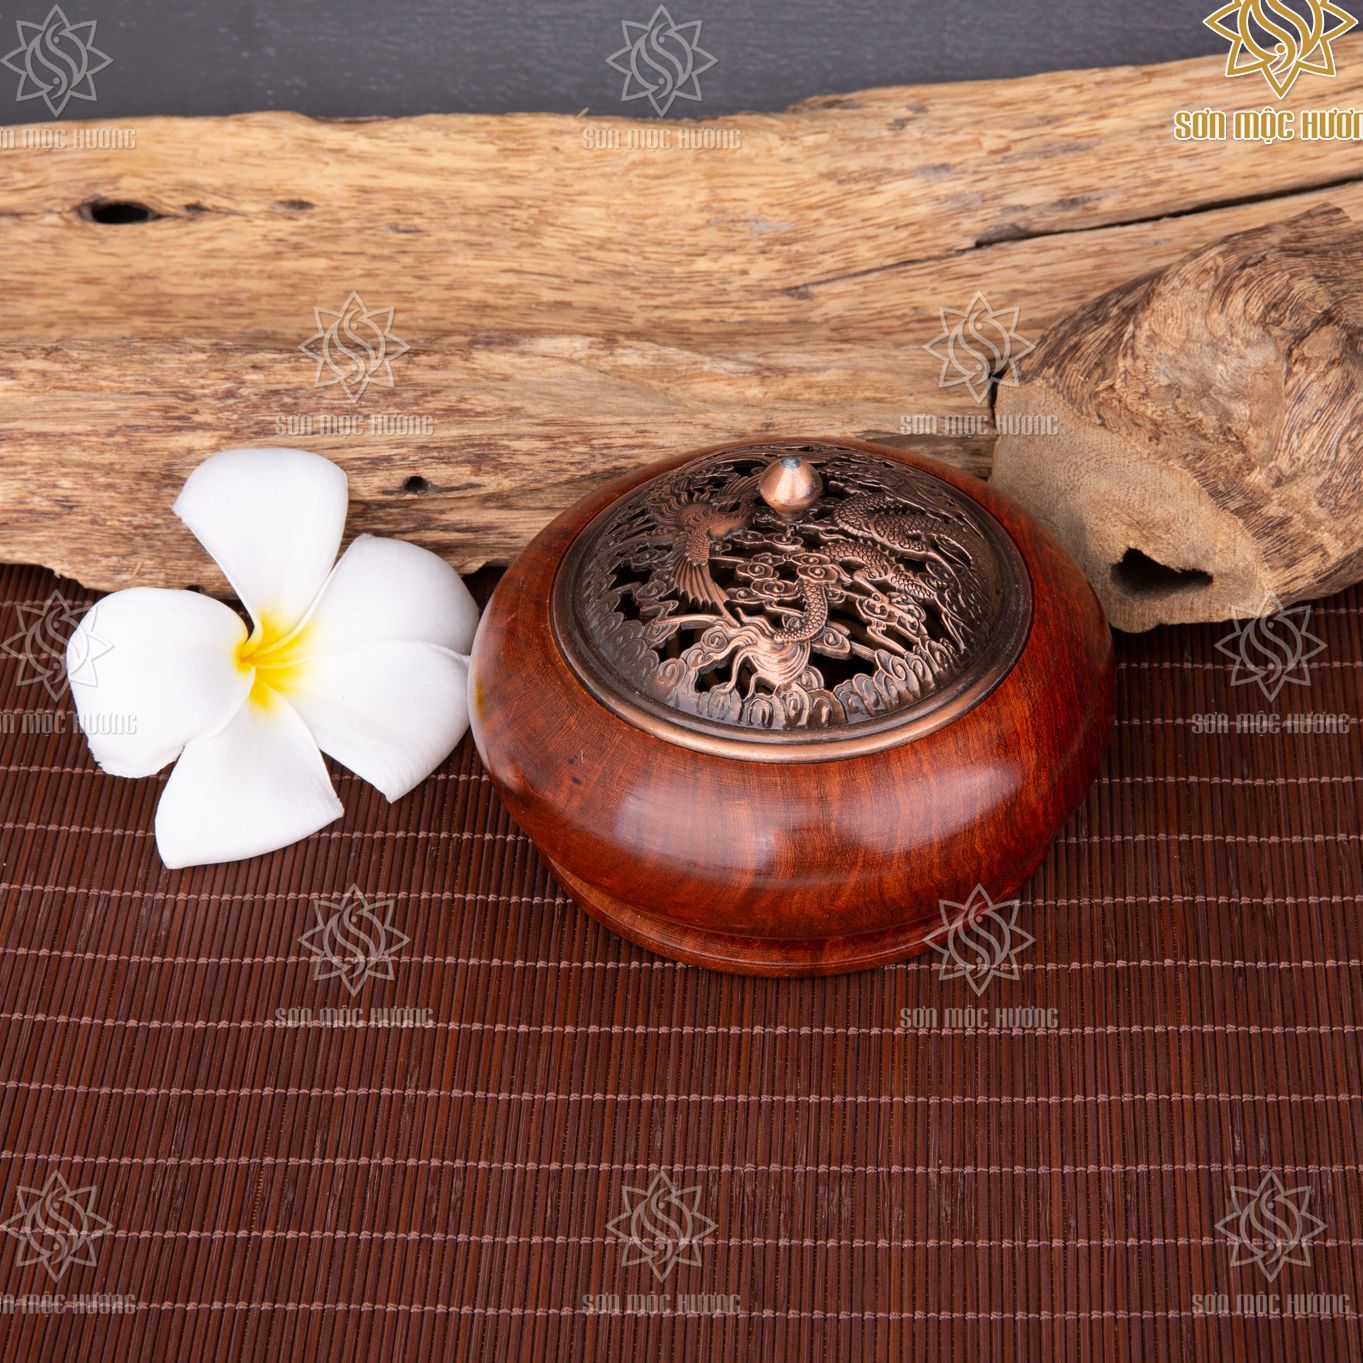 Lư xông trầm hương từ gỗ hương nguyên khối cao cấp Sơn Mộc Hương